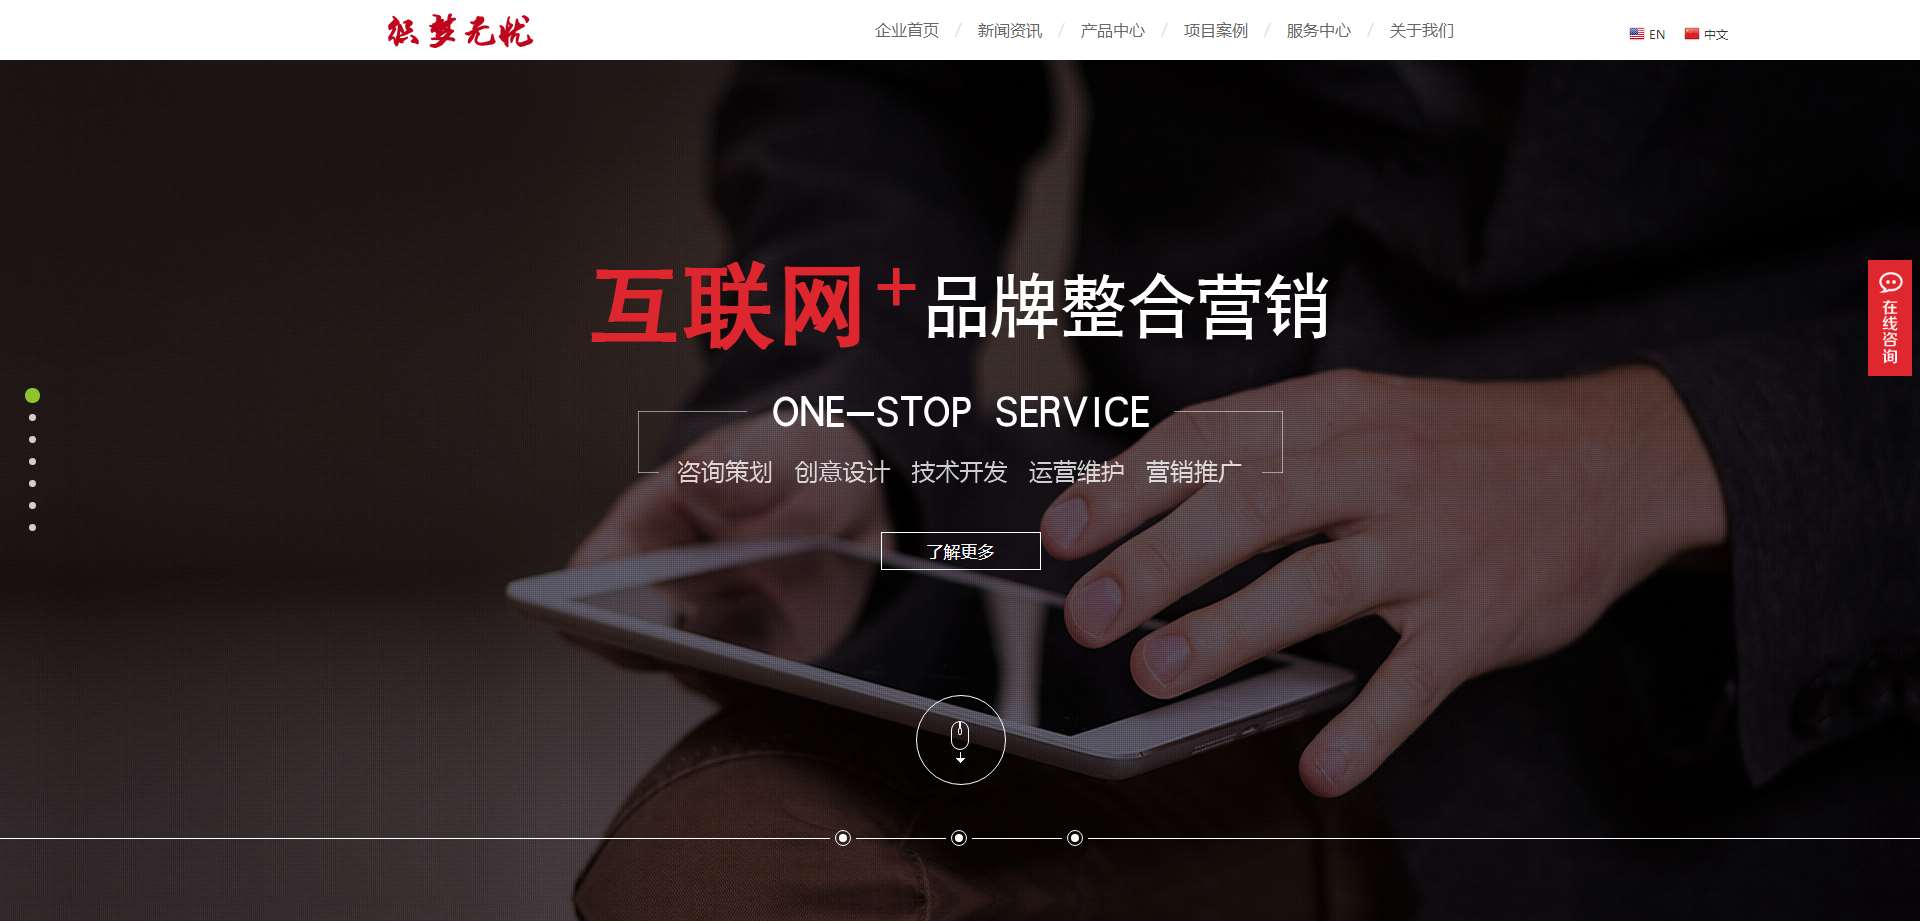 中英双语科技企业公司网站dede织梦模板下载-学习笔记-橙子系统站